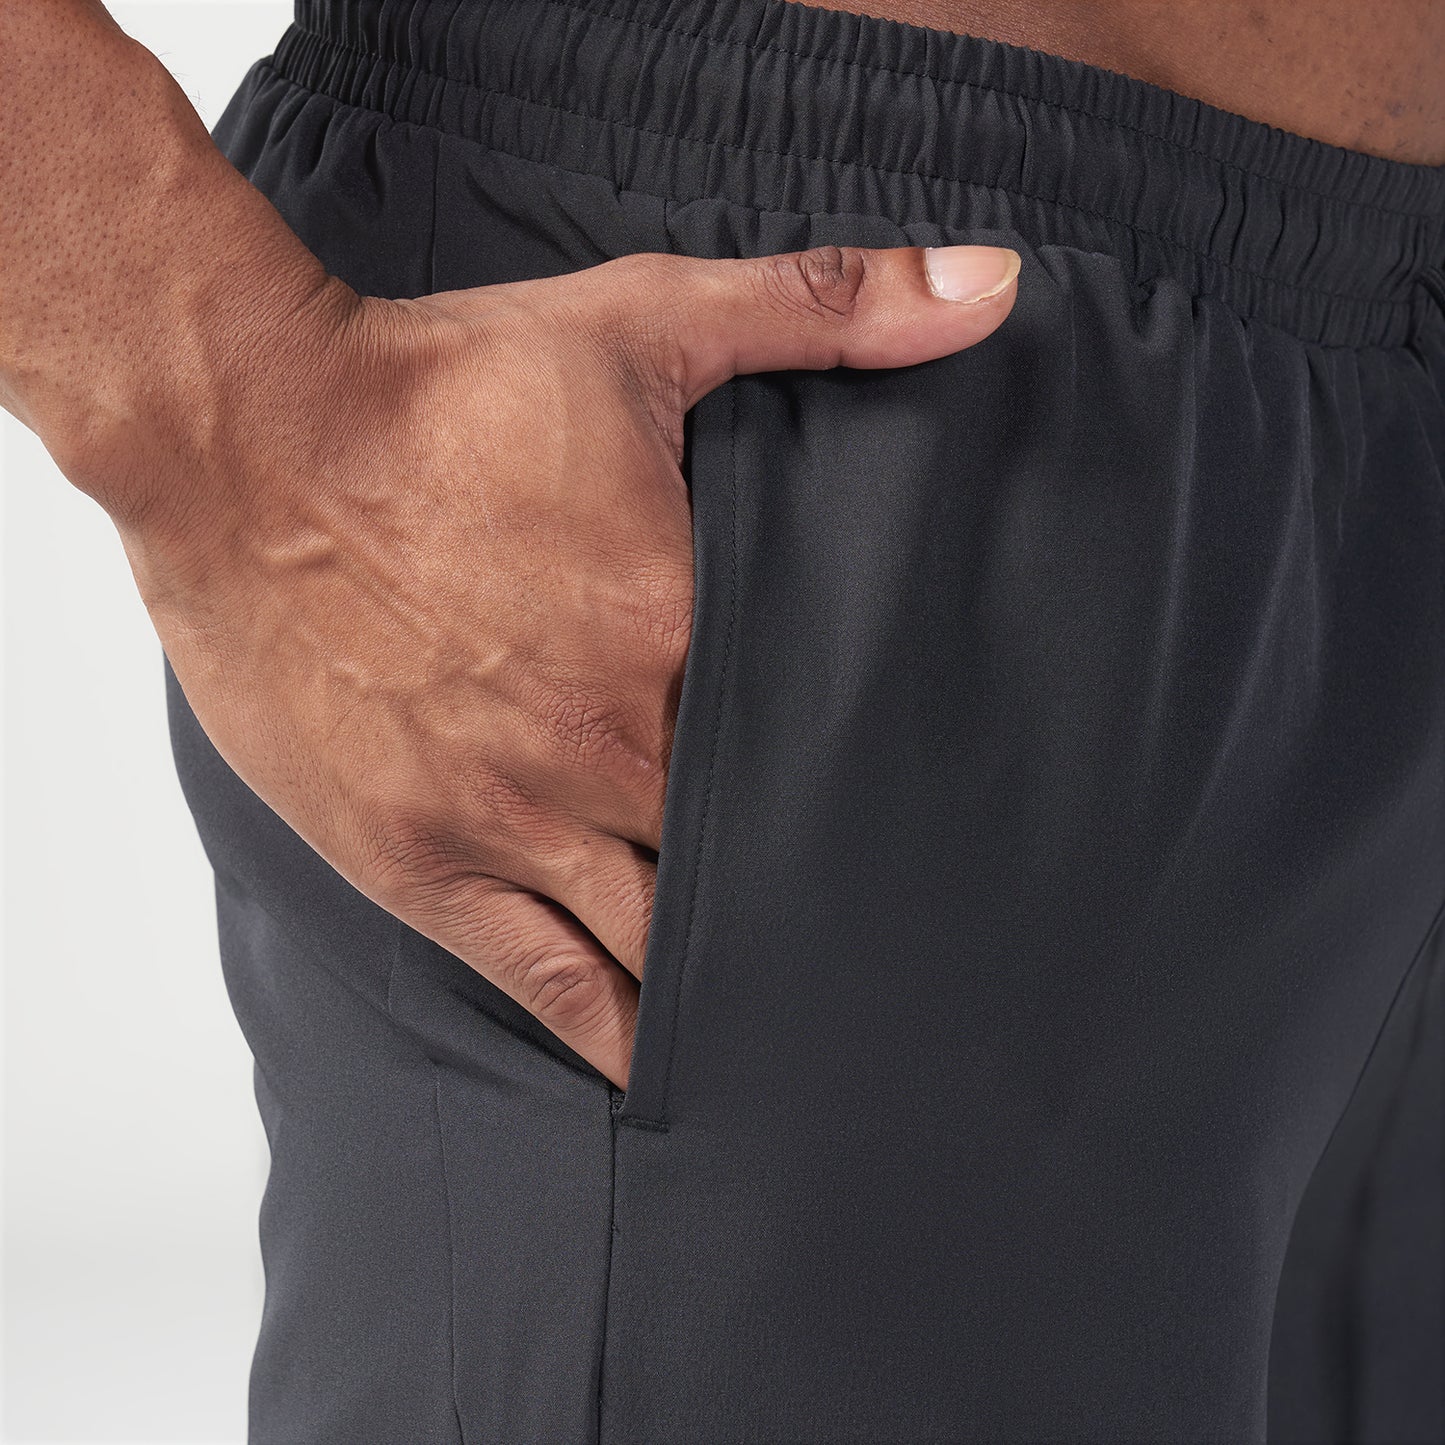 Essential 7 Inch Shorts - Black